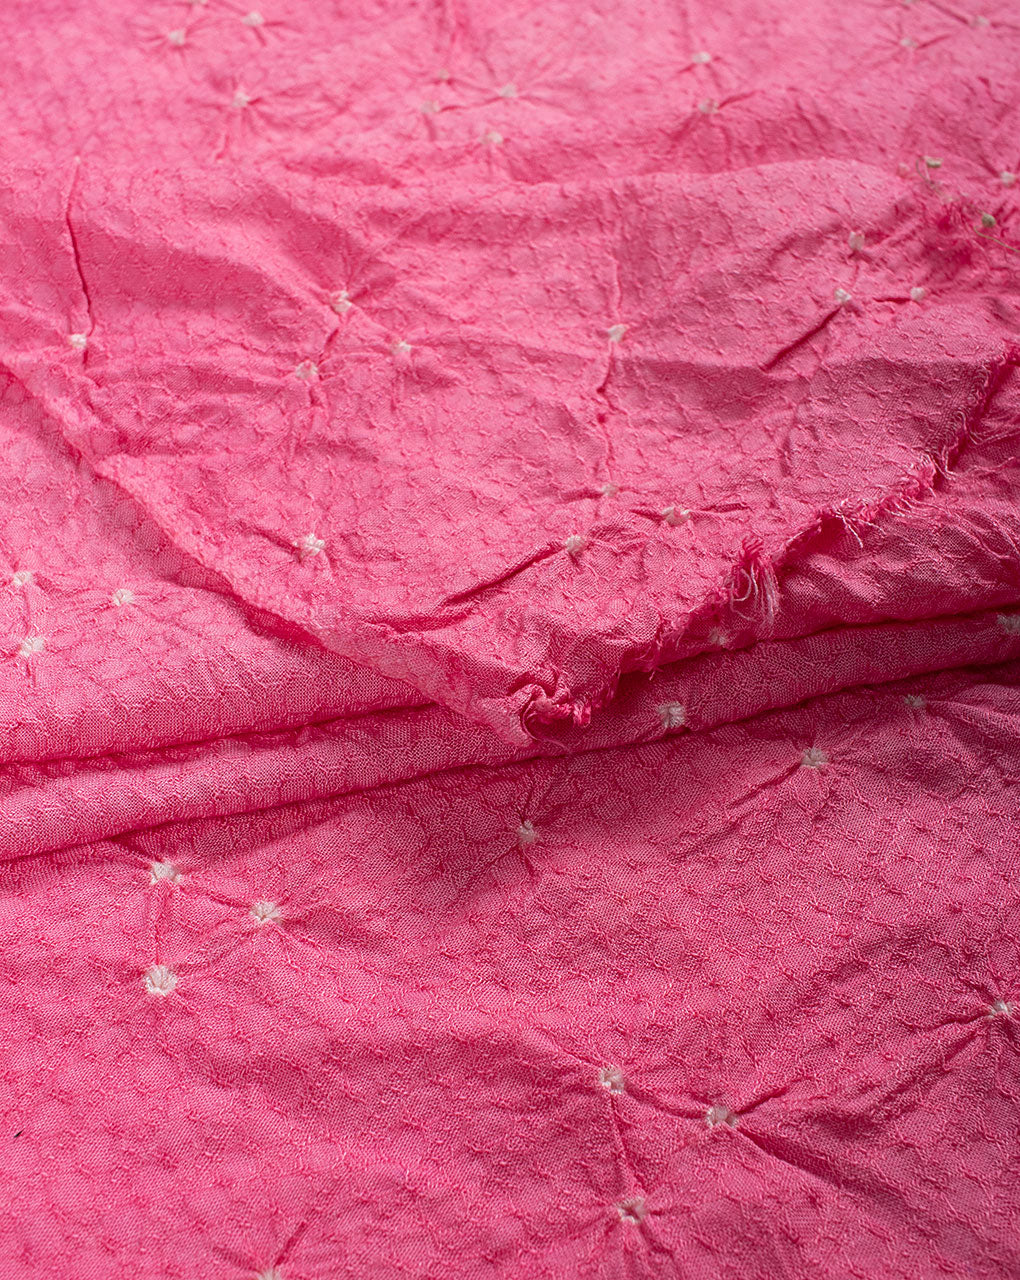 Pink Polka Dots Bandhani Dobby Rayon Dupatta - Fabriclore.com